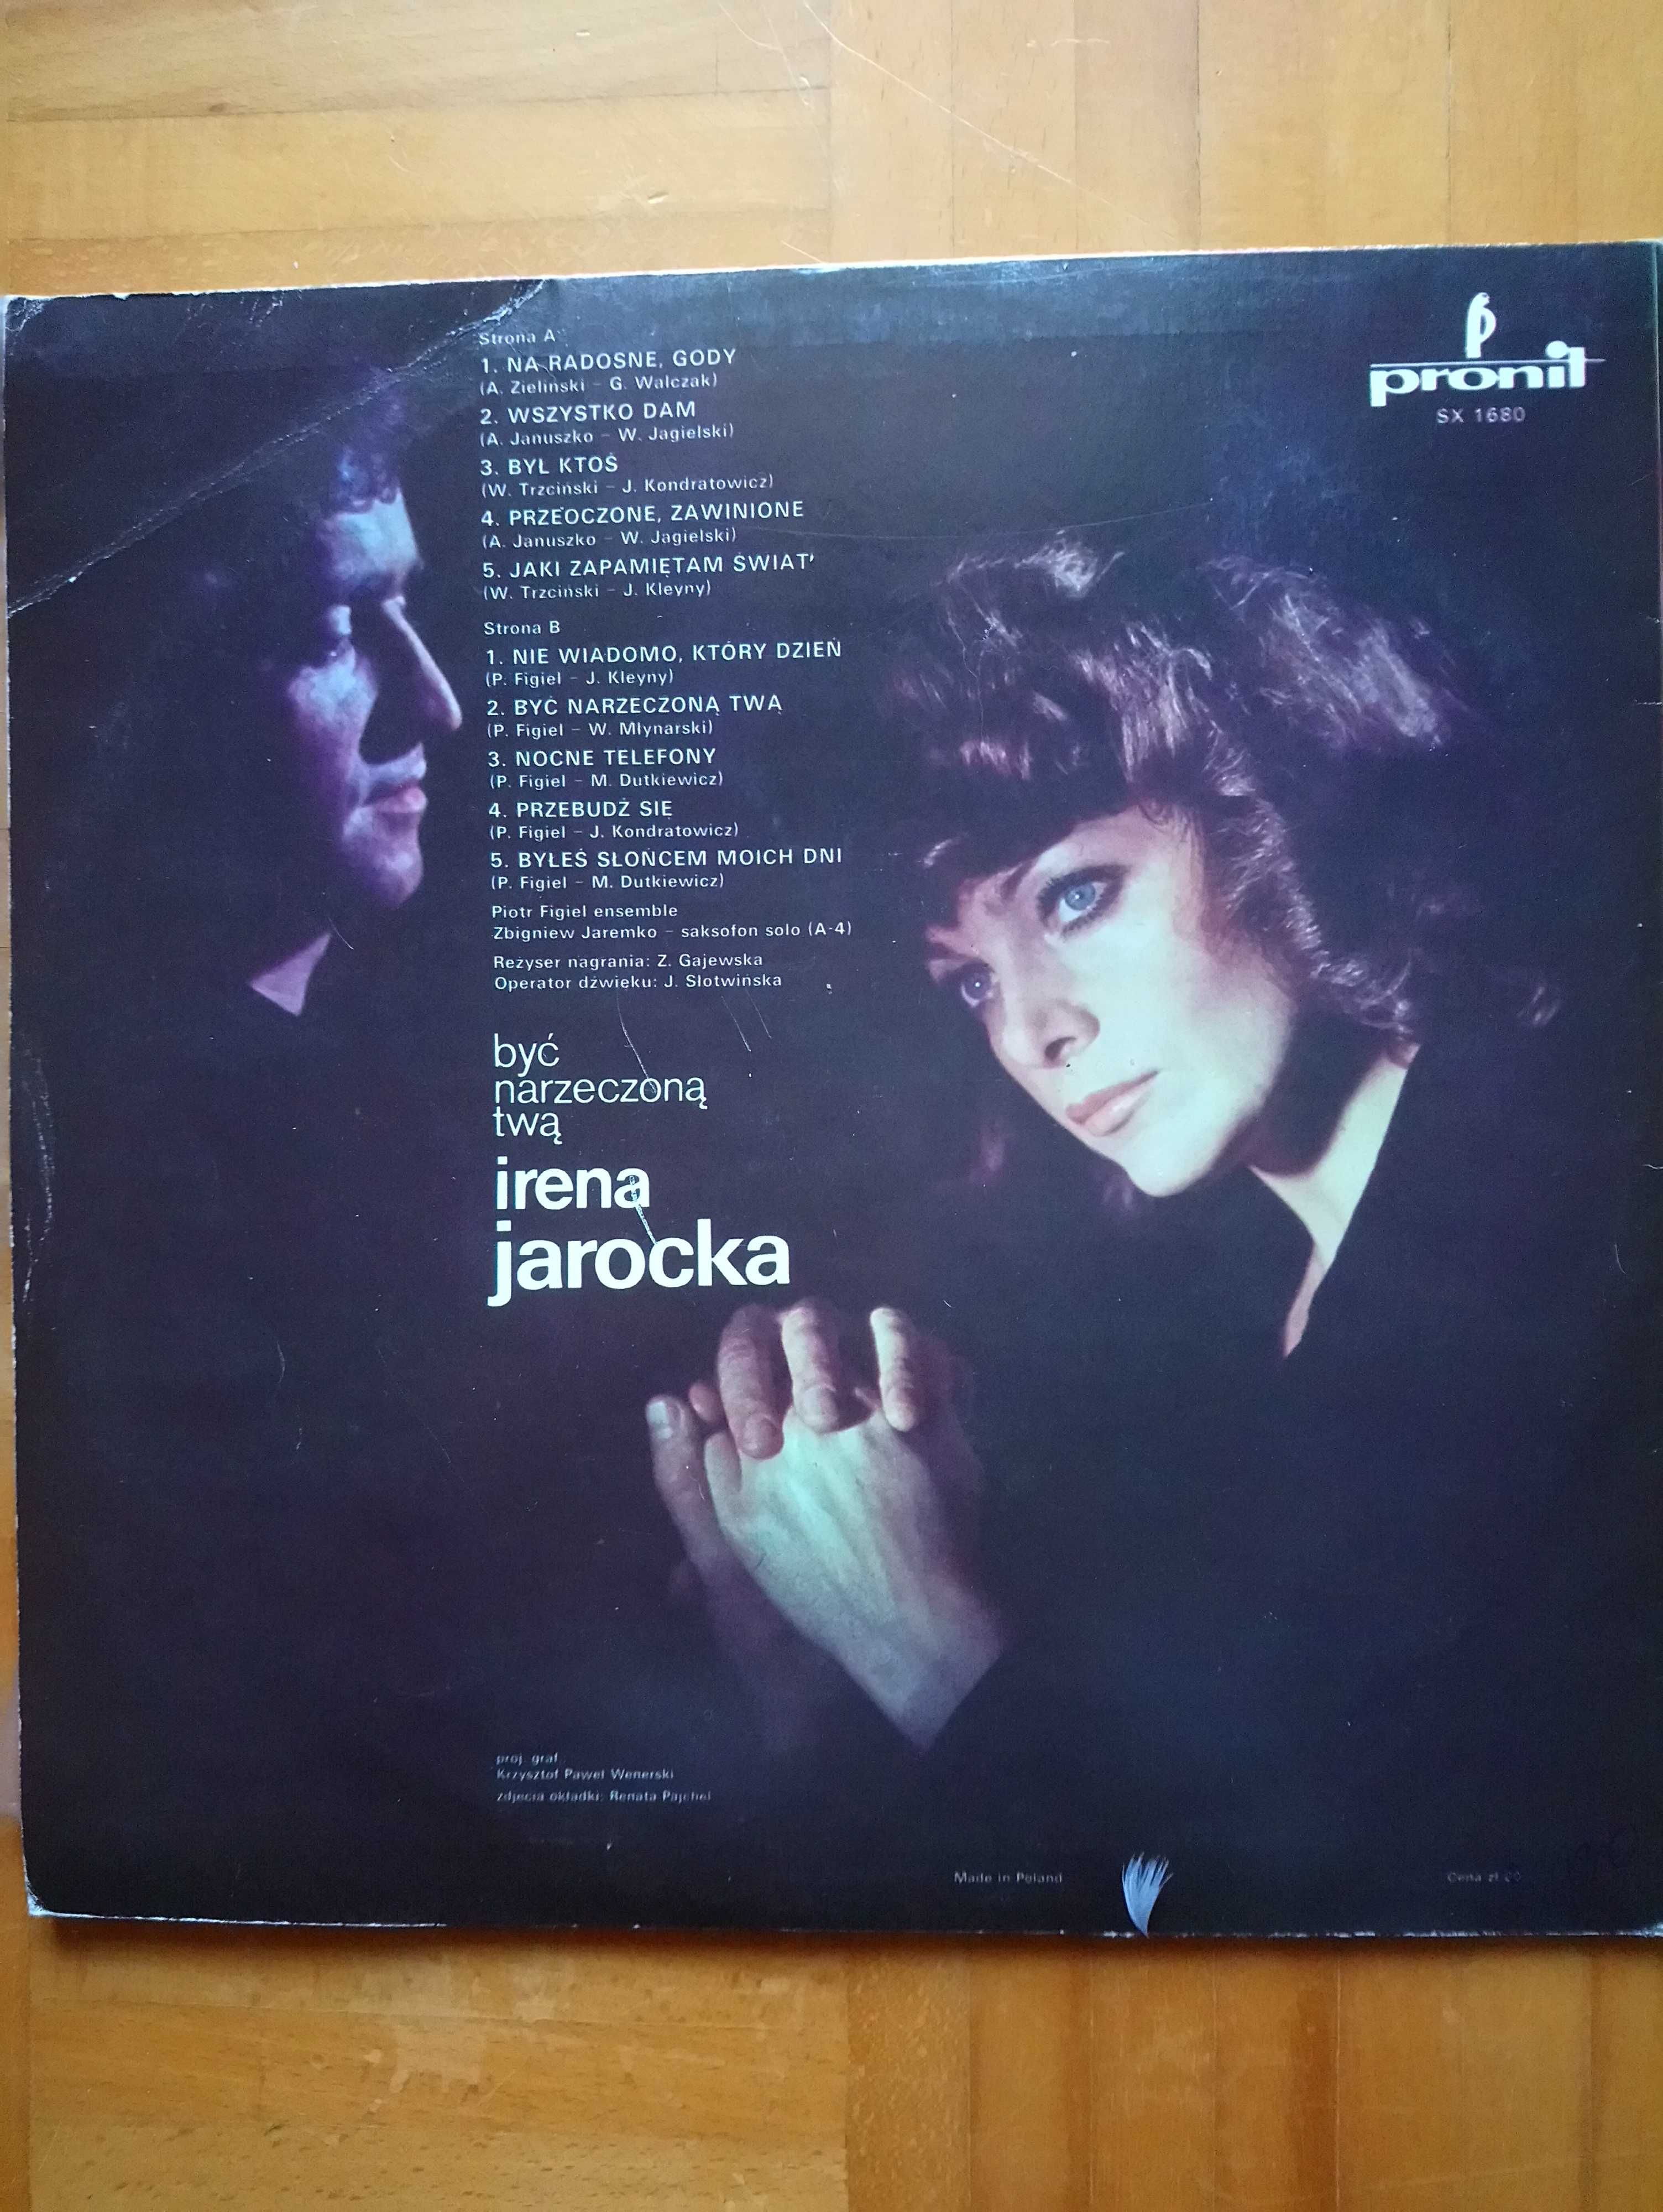 Płyta winylowa, Irena Jarocka